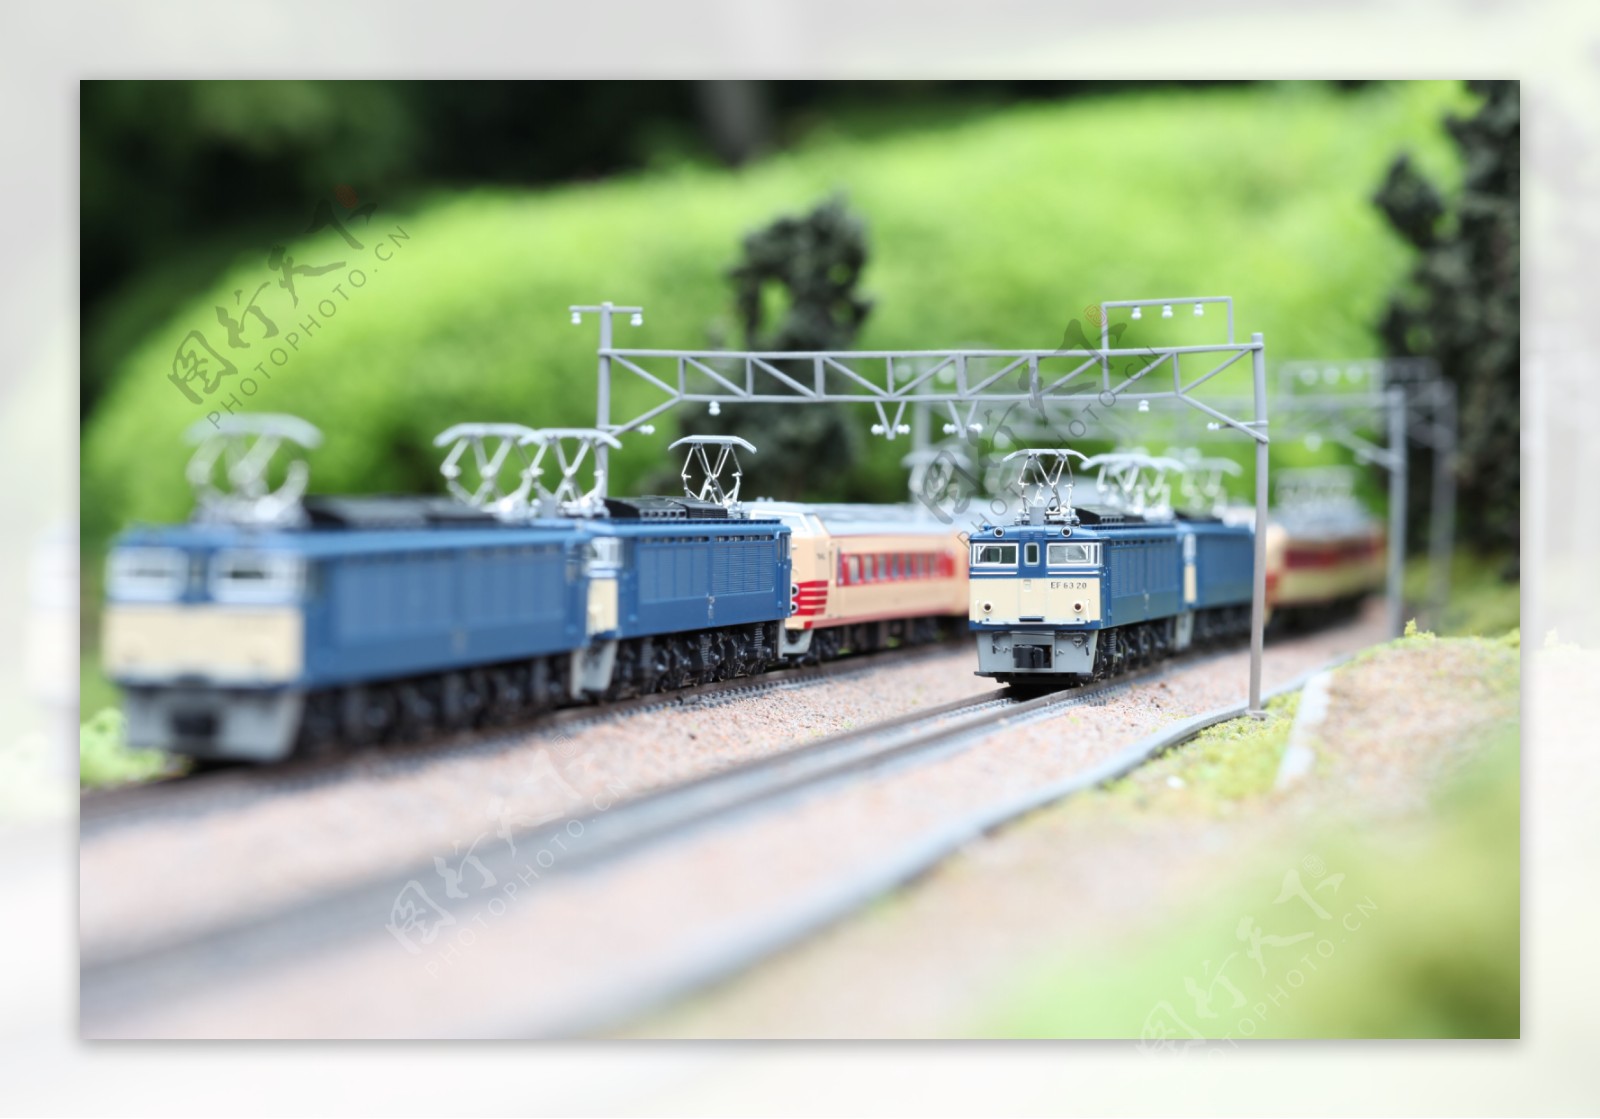 玩具火车图片